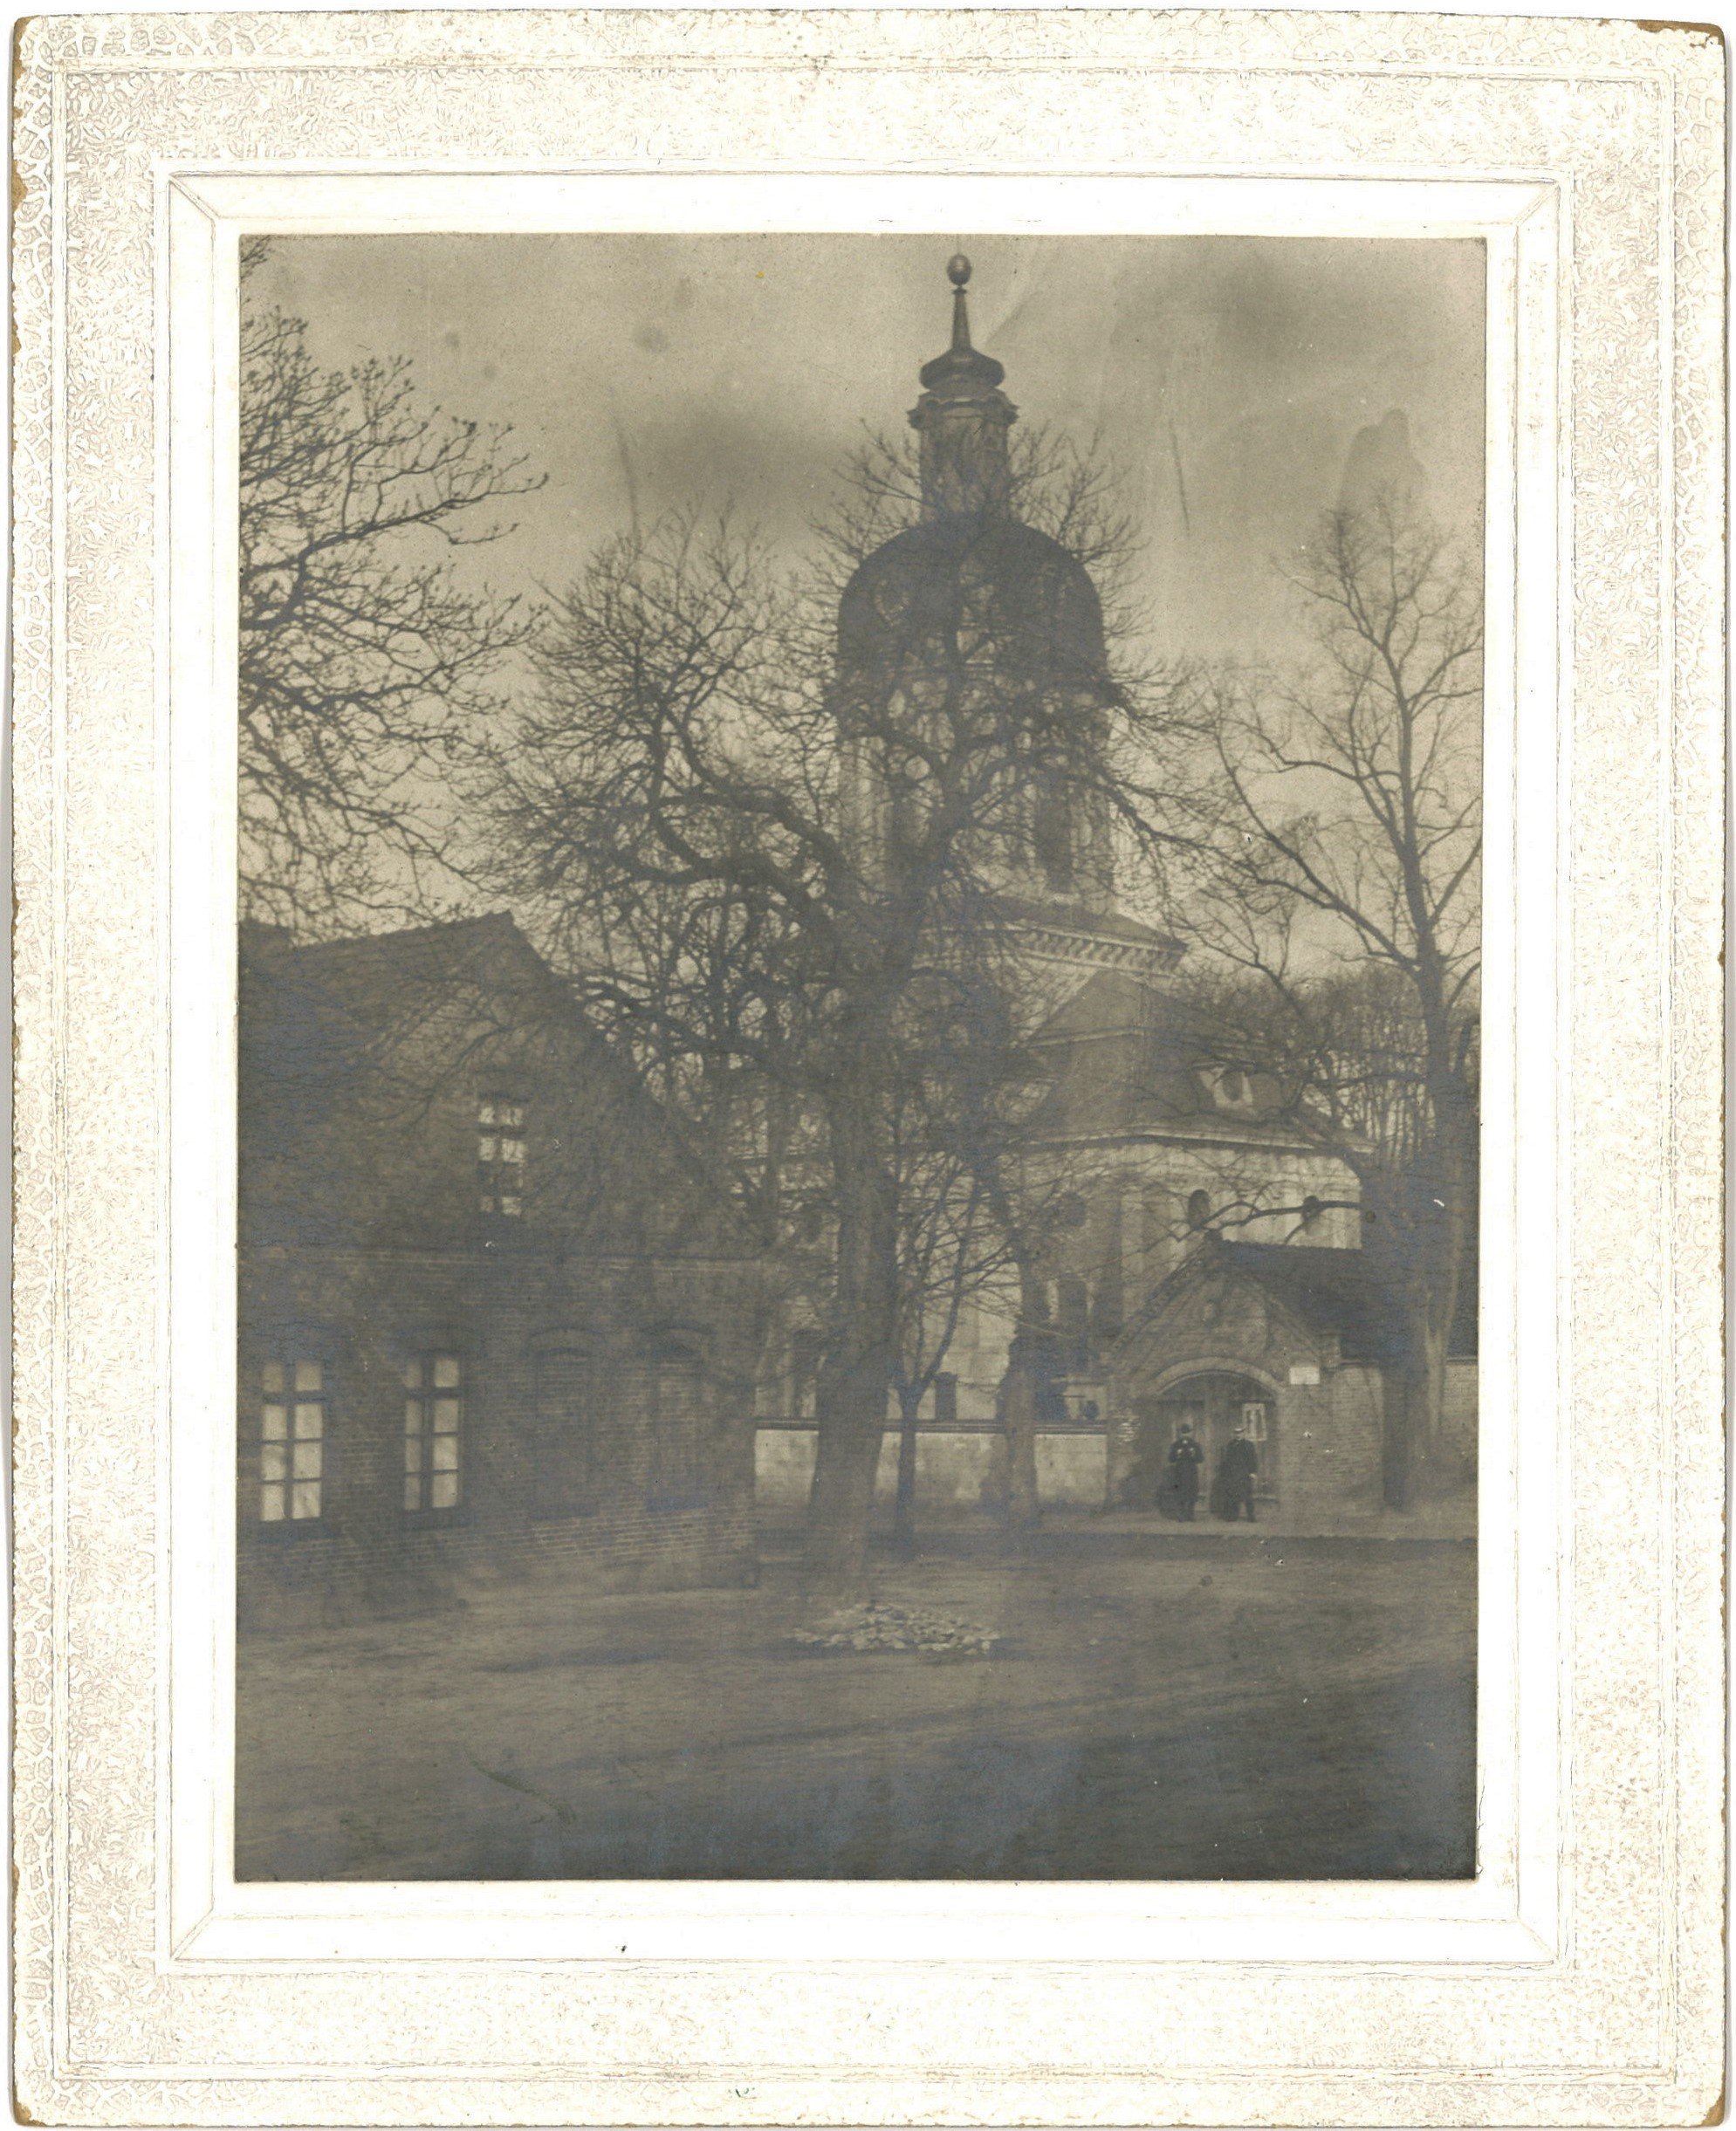 Berlin-Buch: Schlosskirche von Südosten (Landesgeschichtliche Vereinigung für die Mark Brandenburg e.V., Archiv CC BY)